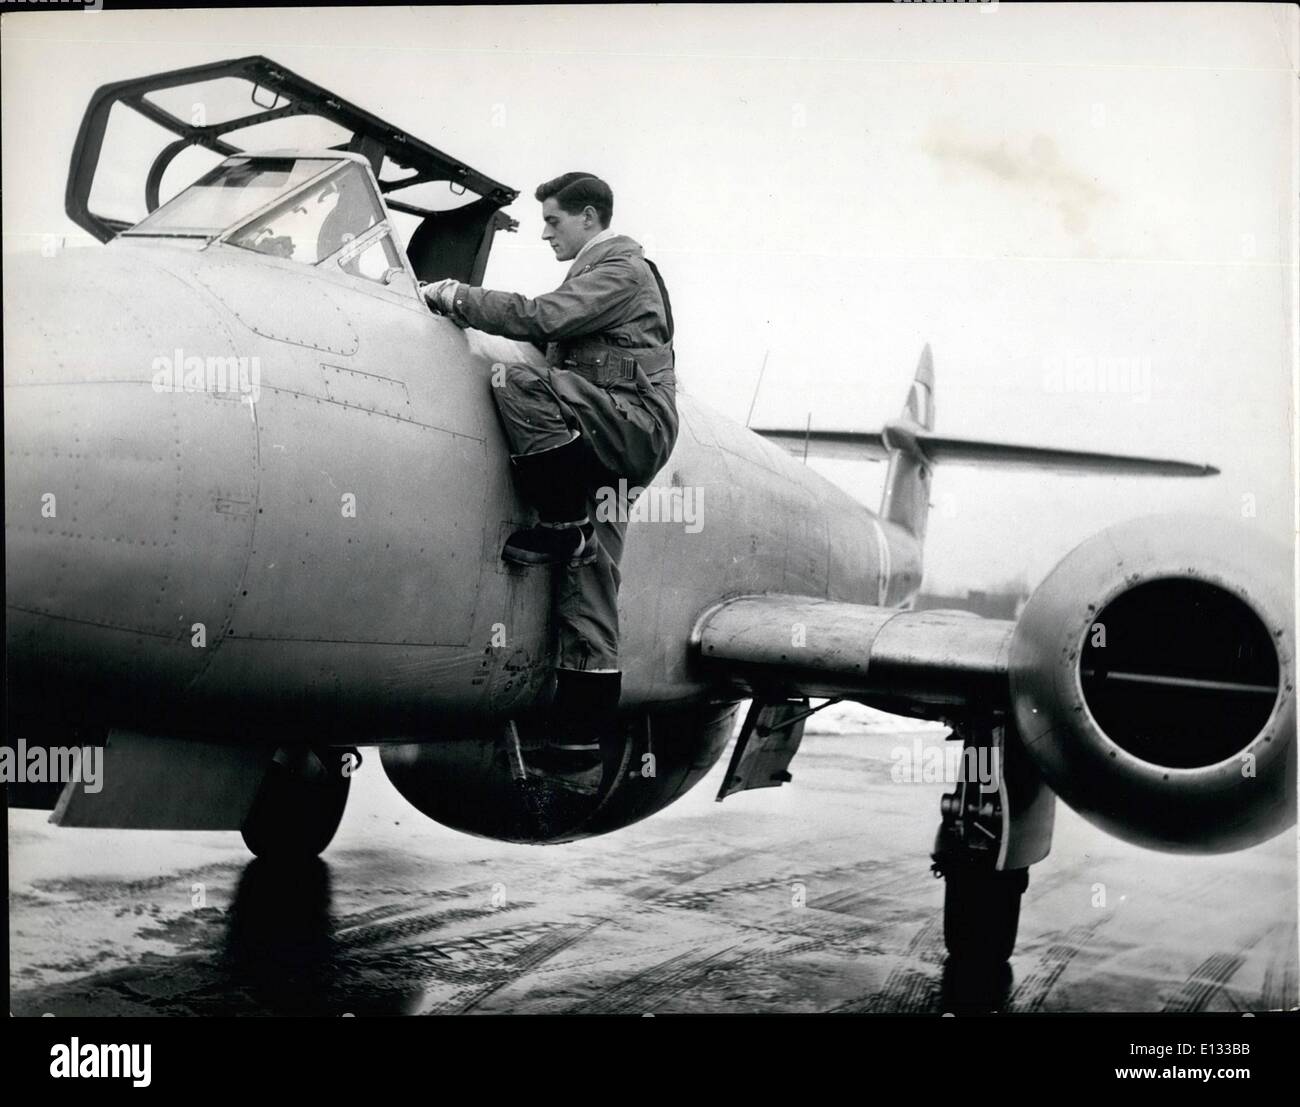 Febbraio 26, 2012 - formazione degli equipaggi per il Canberra: Il futuro pilota riceve la sua formazione iniziale a Bassingbourn sul Meteor Mk. 7. Qui P/O. R.M. Hargreaves salite a bordo per il suo primo volo di formazione. Foto Stock